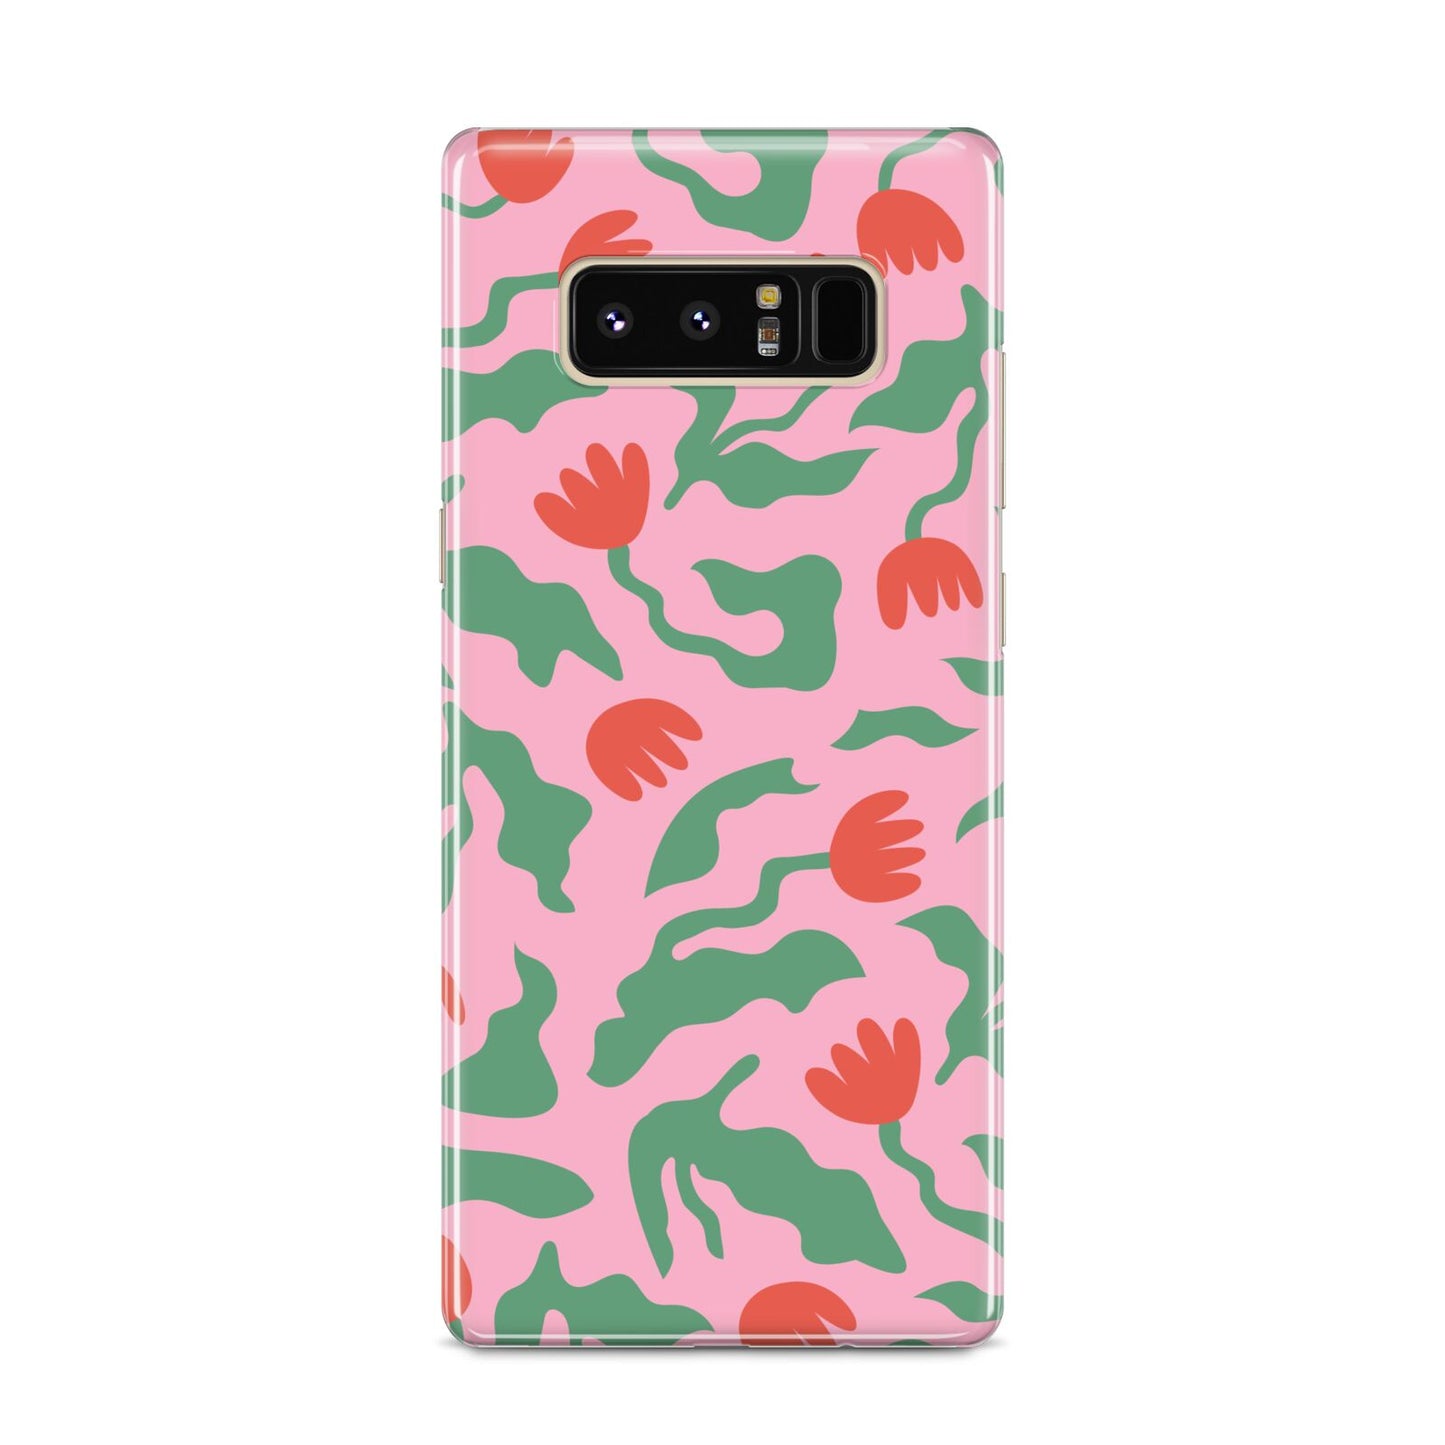 Simple Floral Samsung Galaxy S8 Case